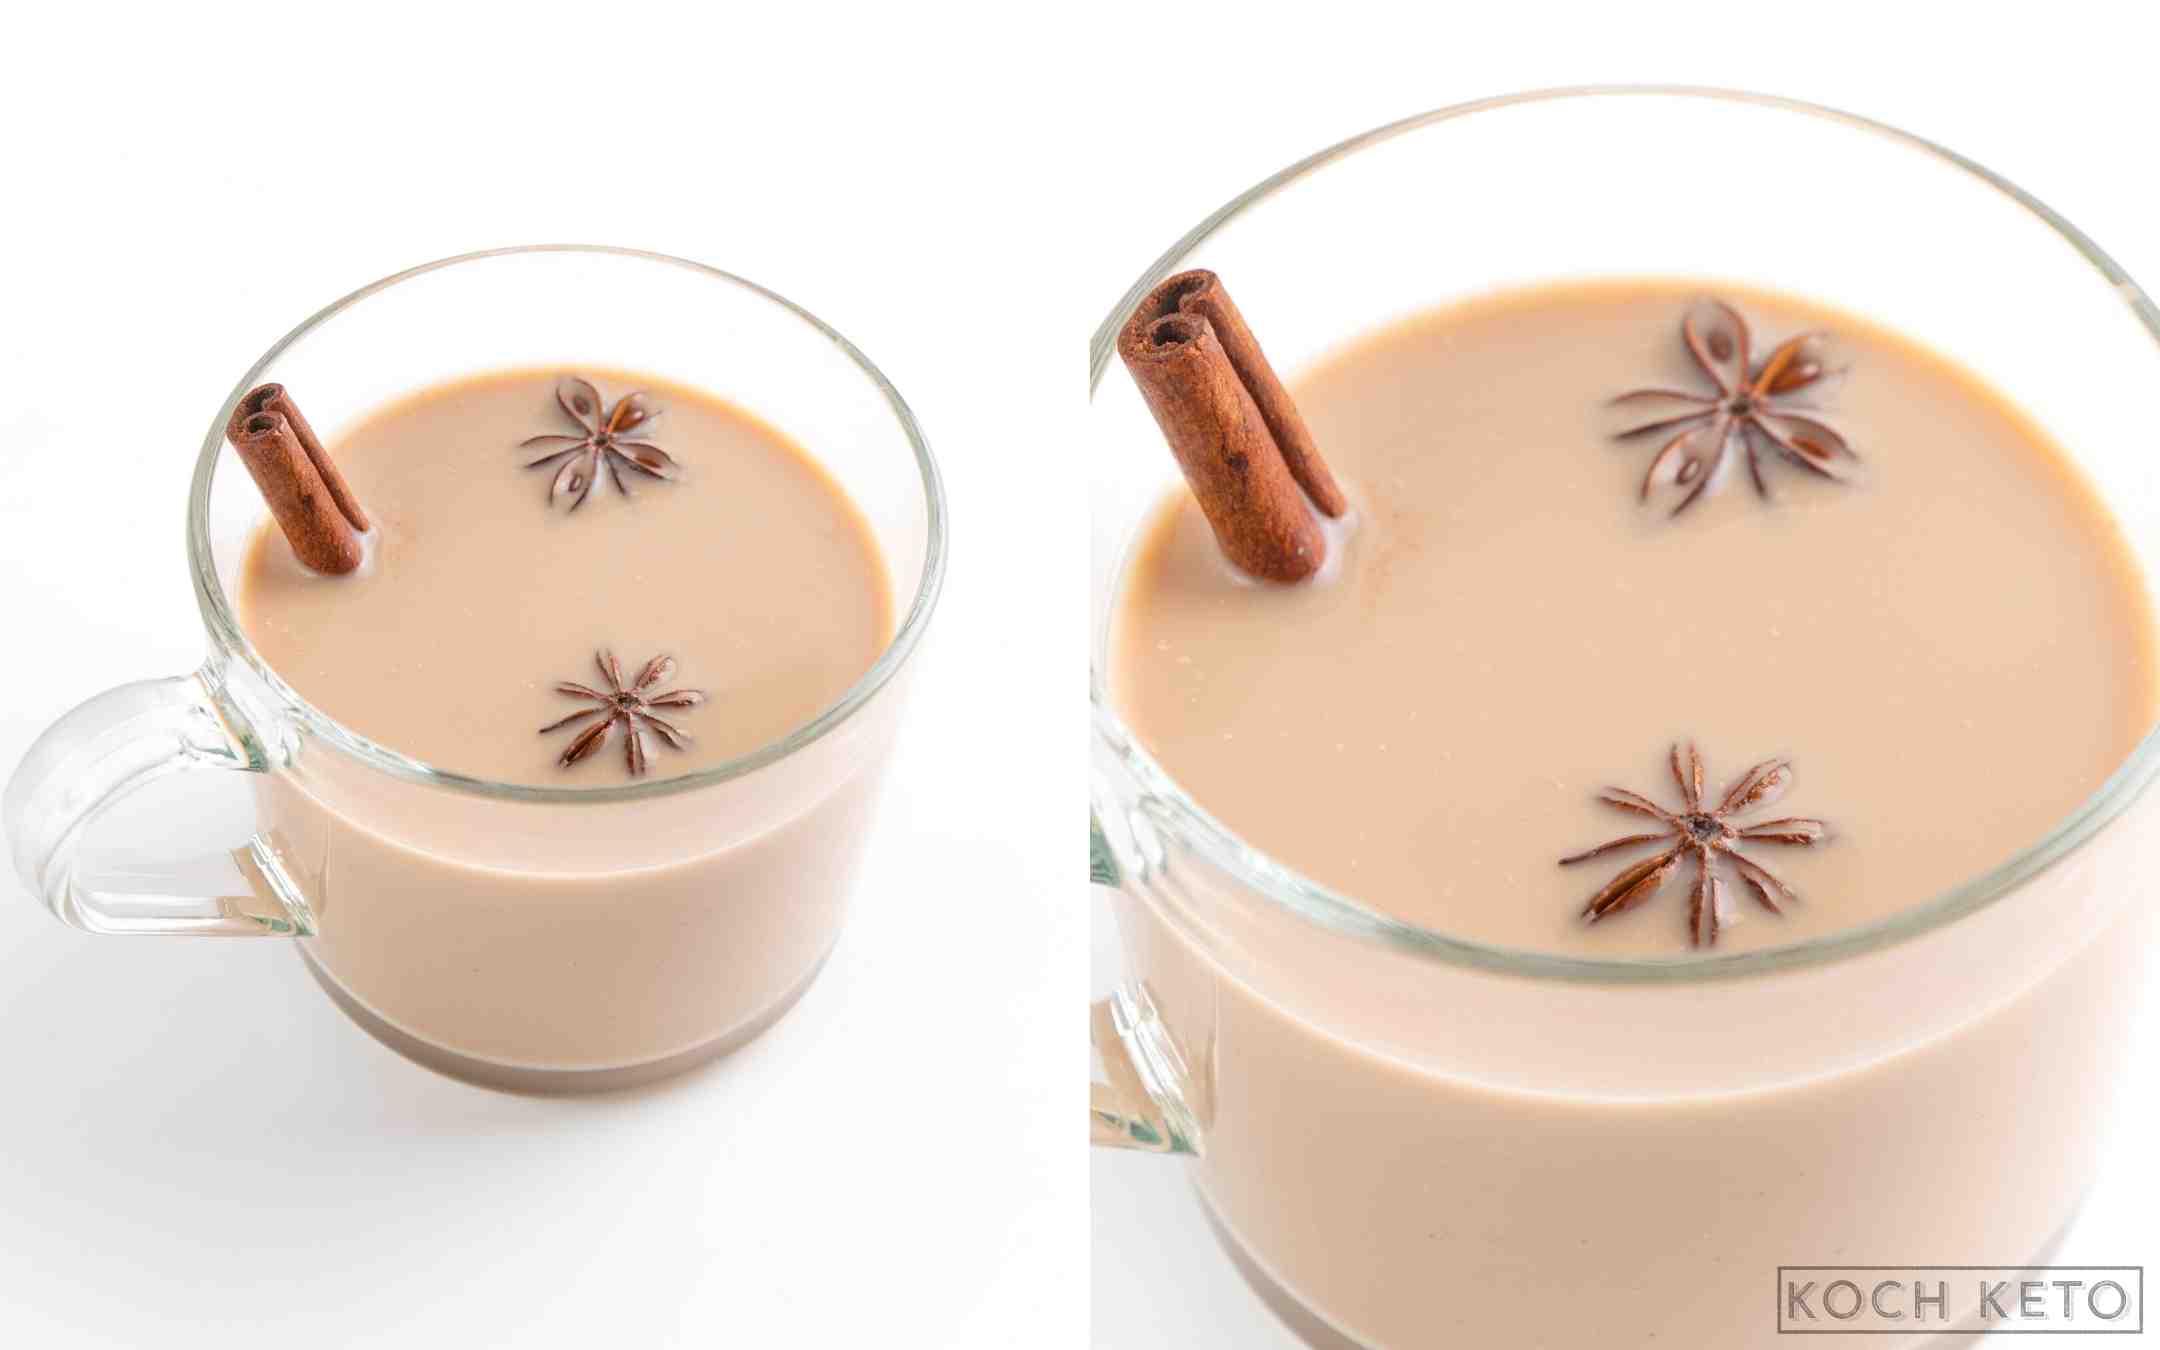 Leckere Chai Latte ohne Zucker und ohne Kohlenhydrate selber machen als ideales Low Carb oder ketogenes Getränk Desktop Image Collage